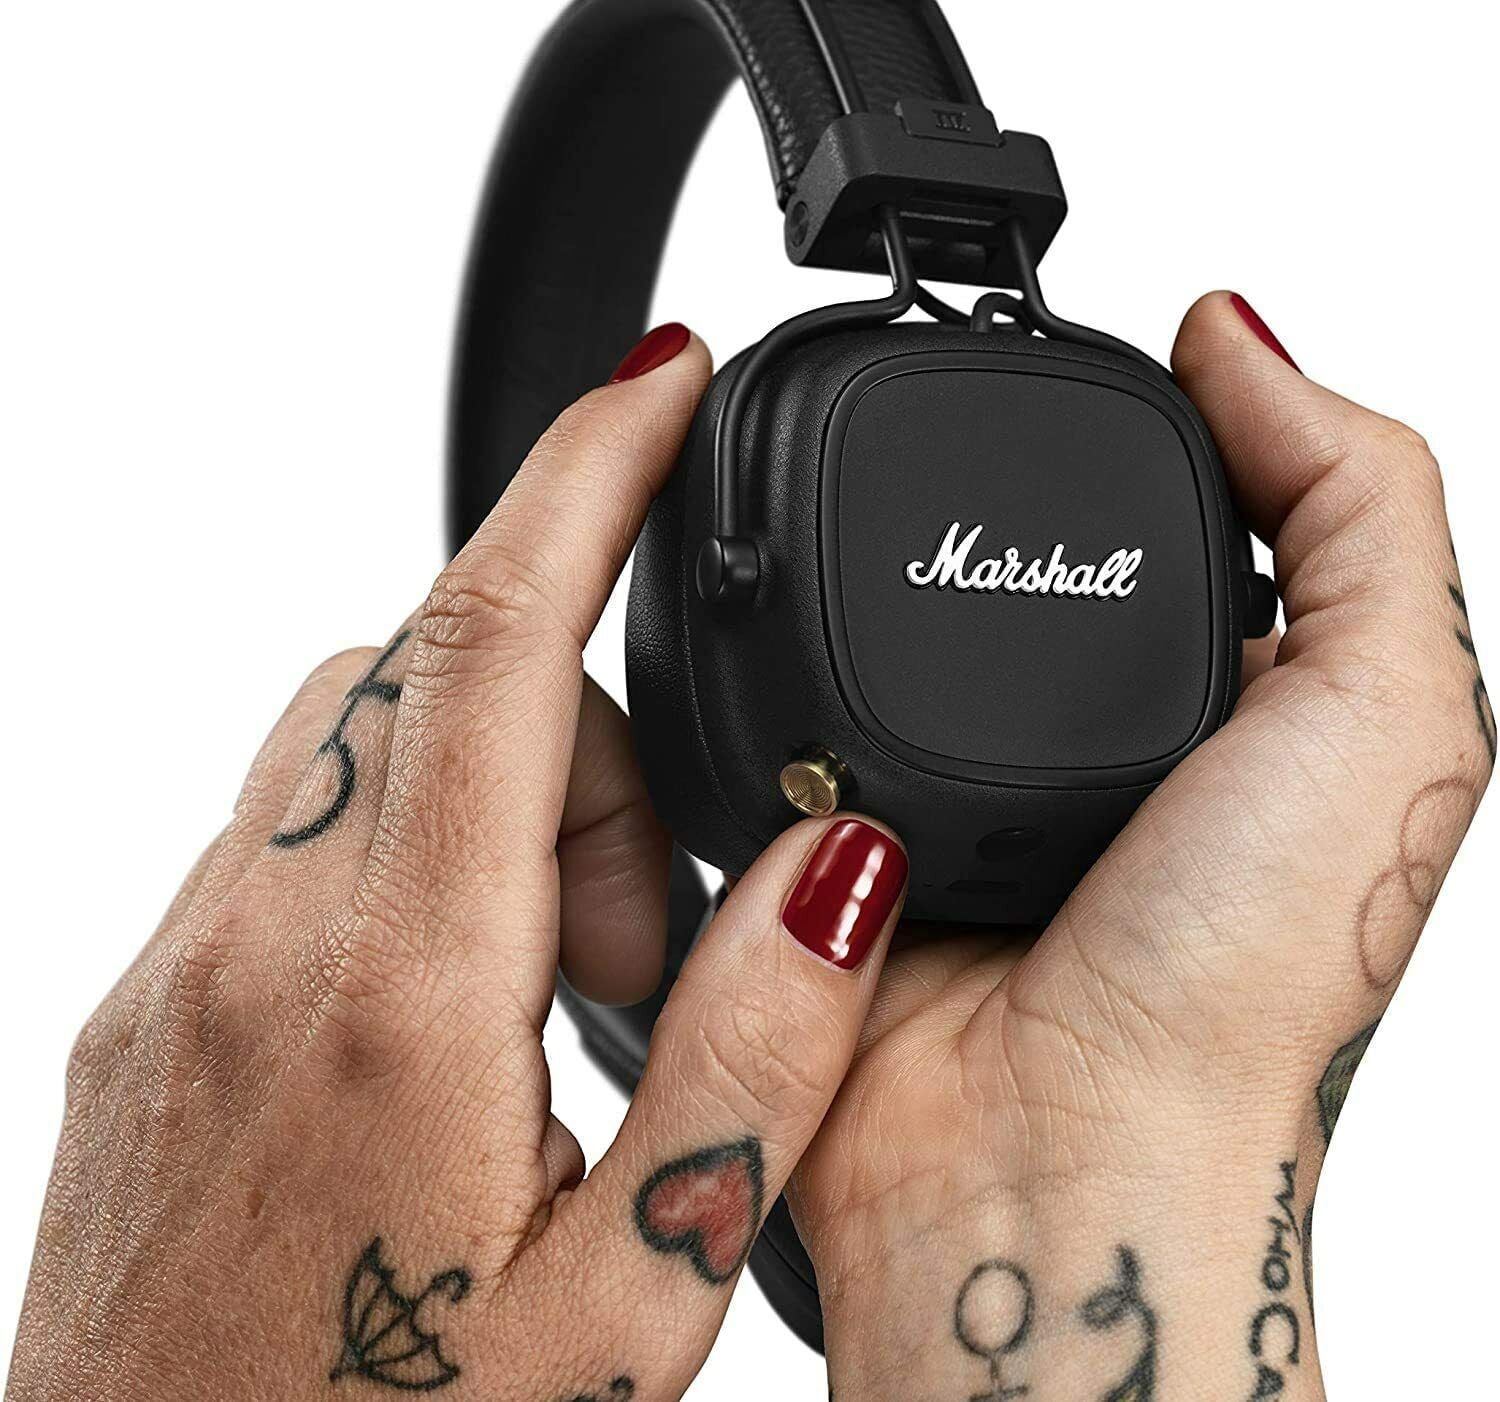 Marshall Major IV On-Ear Bluetooth Headphone - Black - Walmart.com